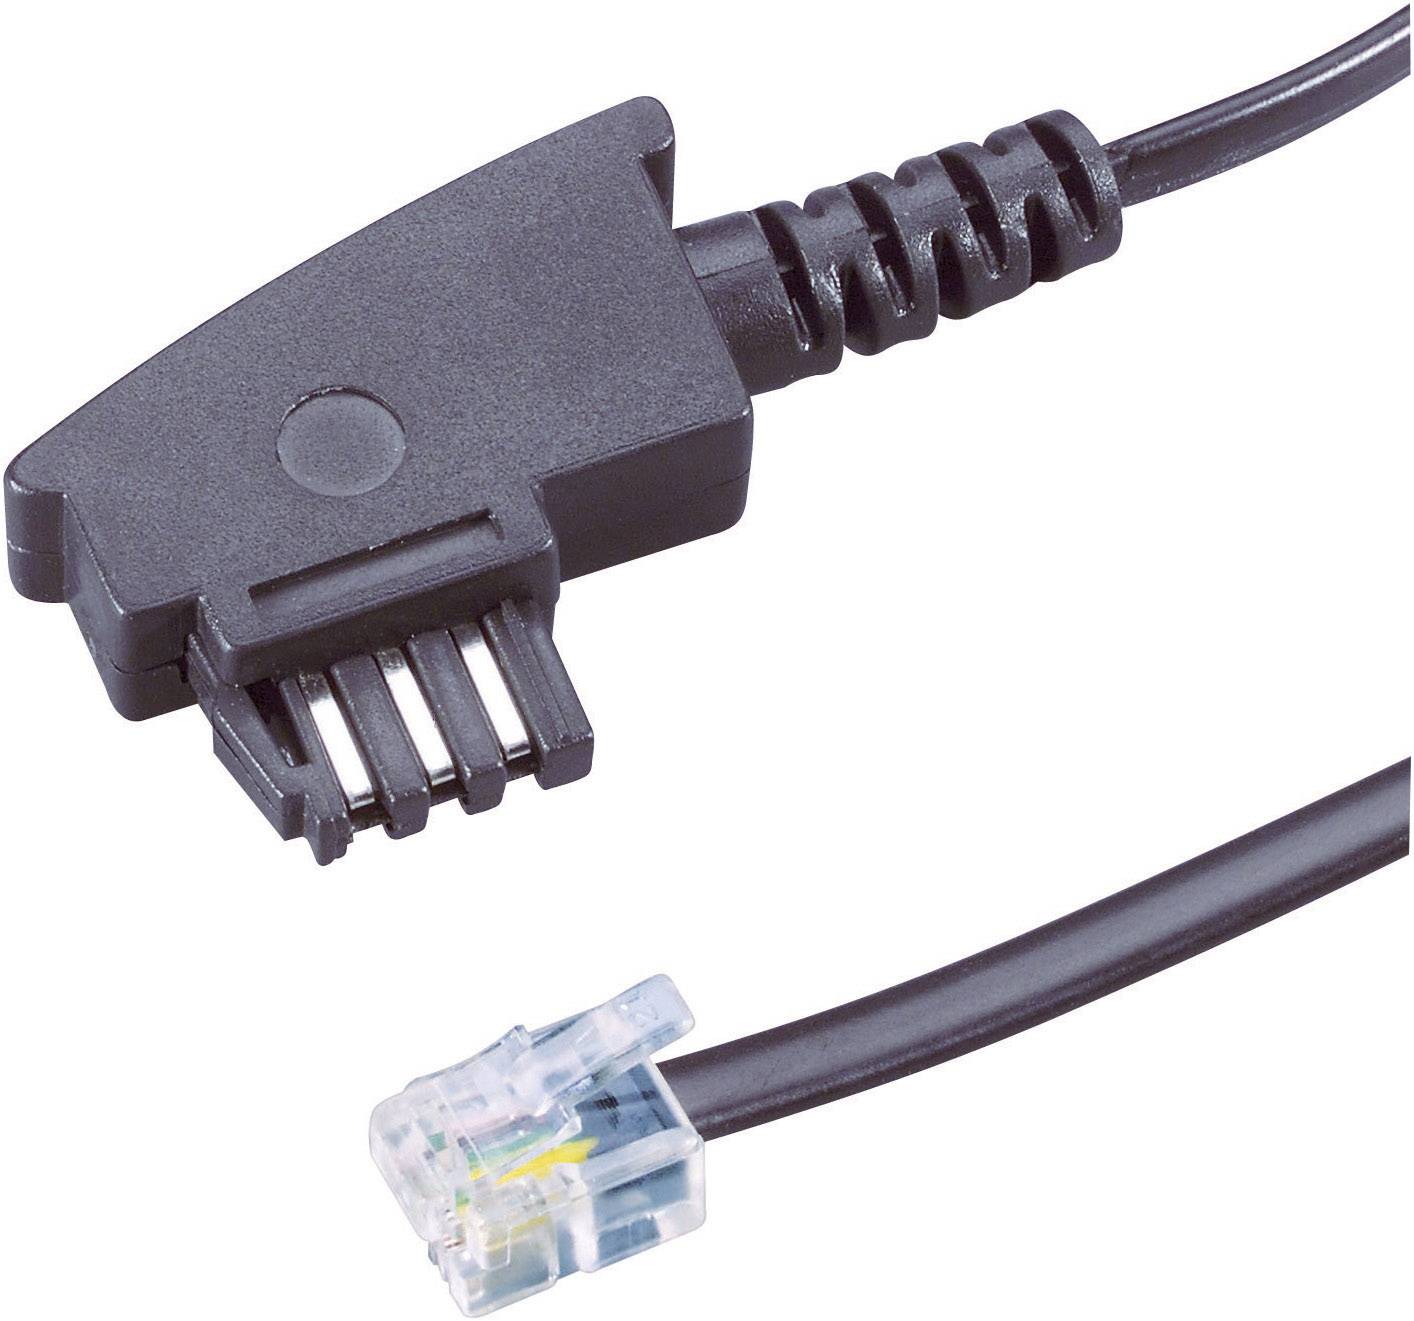 tae f enchufe-modular-conector 6p4c Hama cable de conexión 6 m 44950 siemens bel 